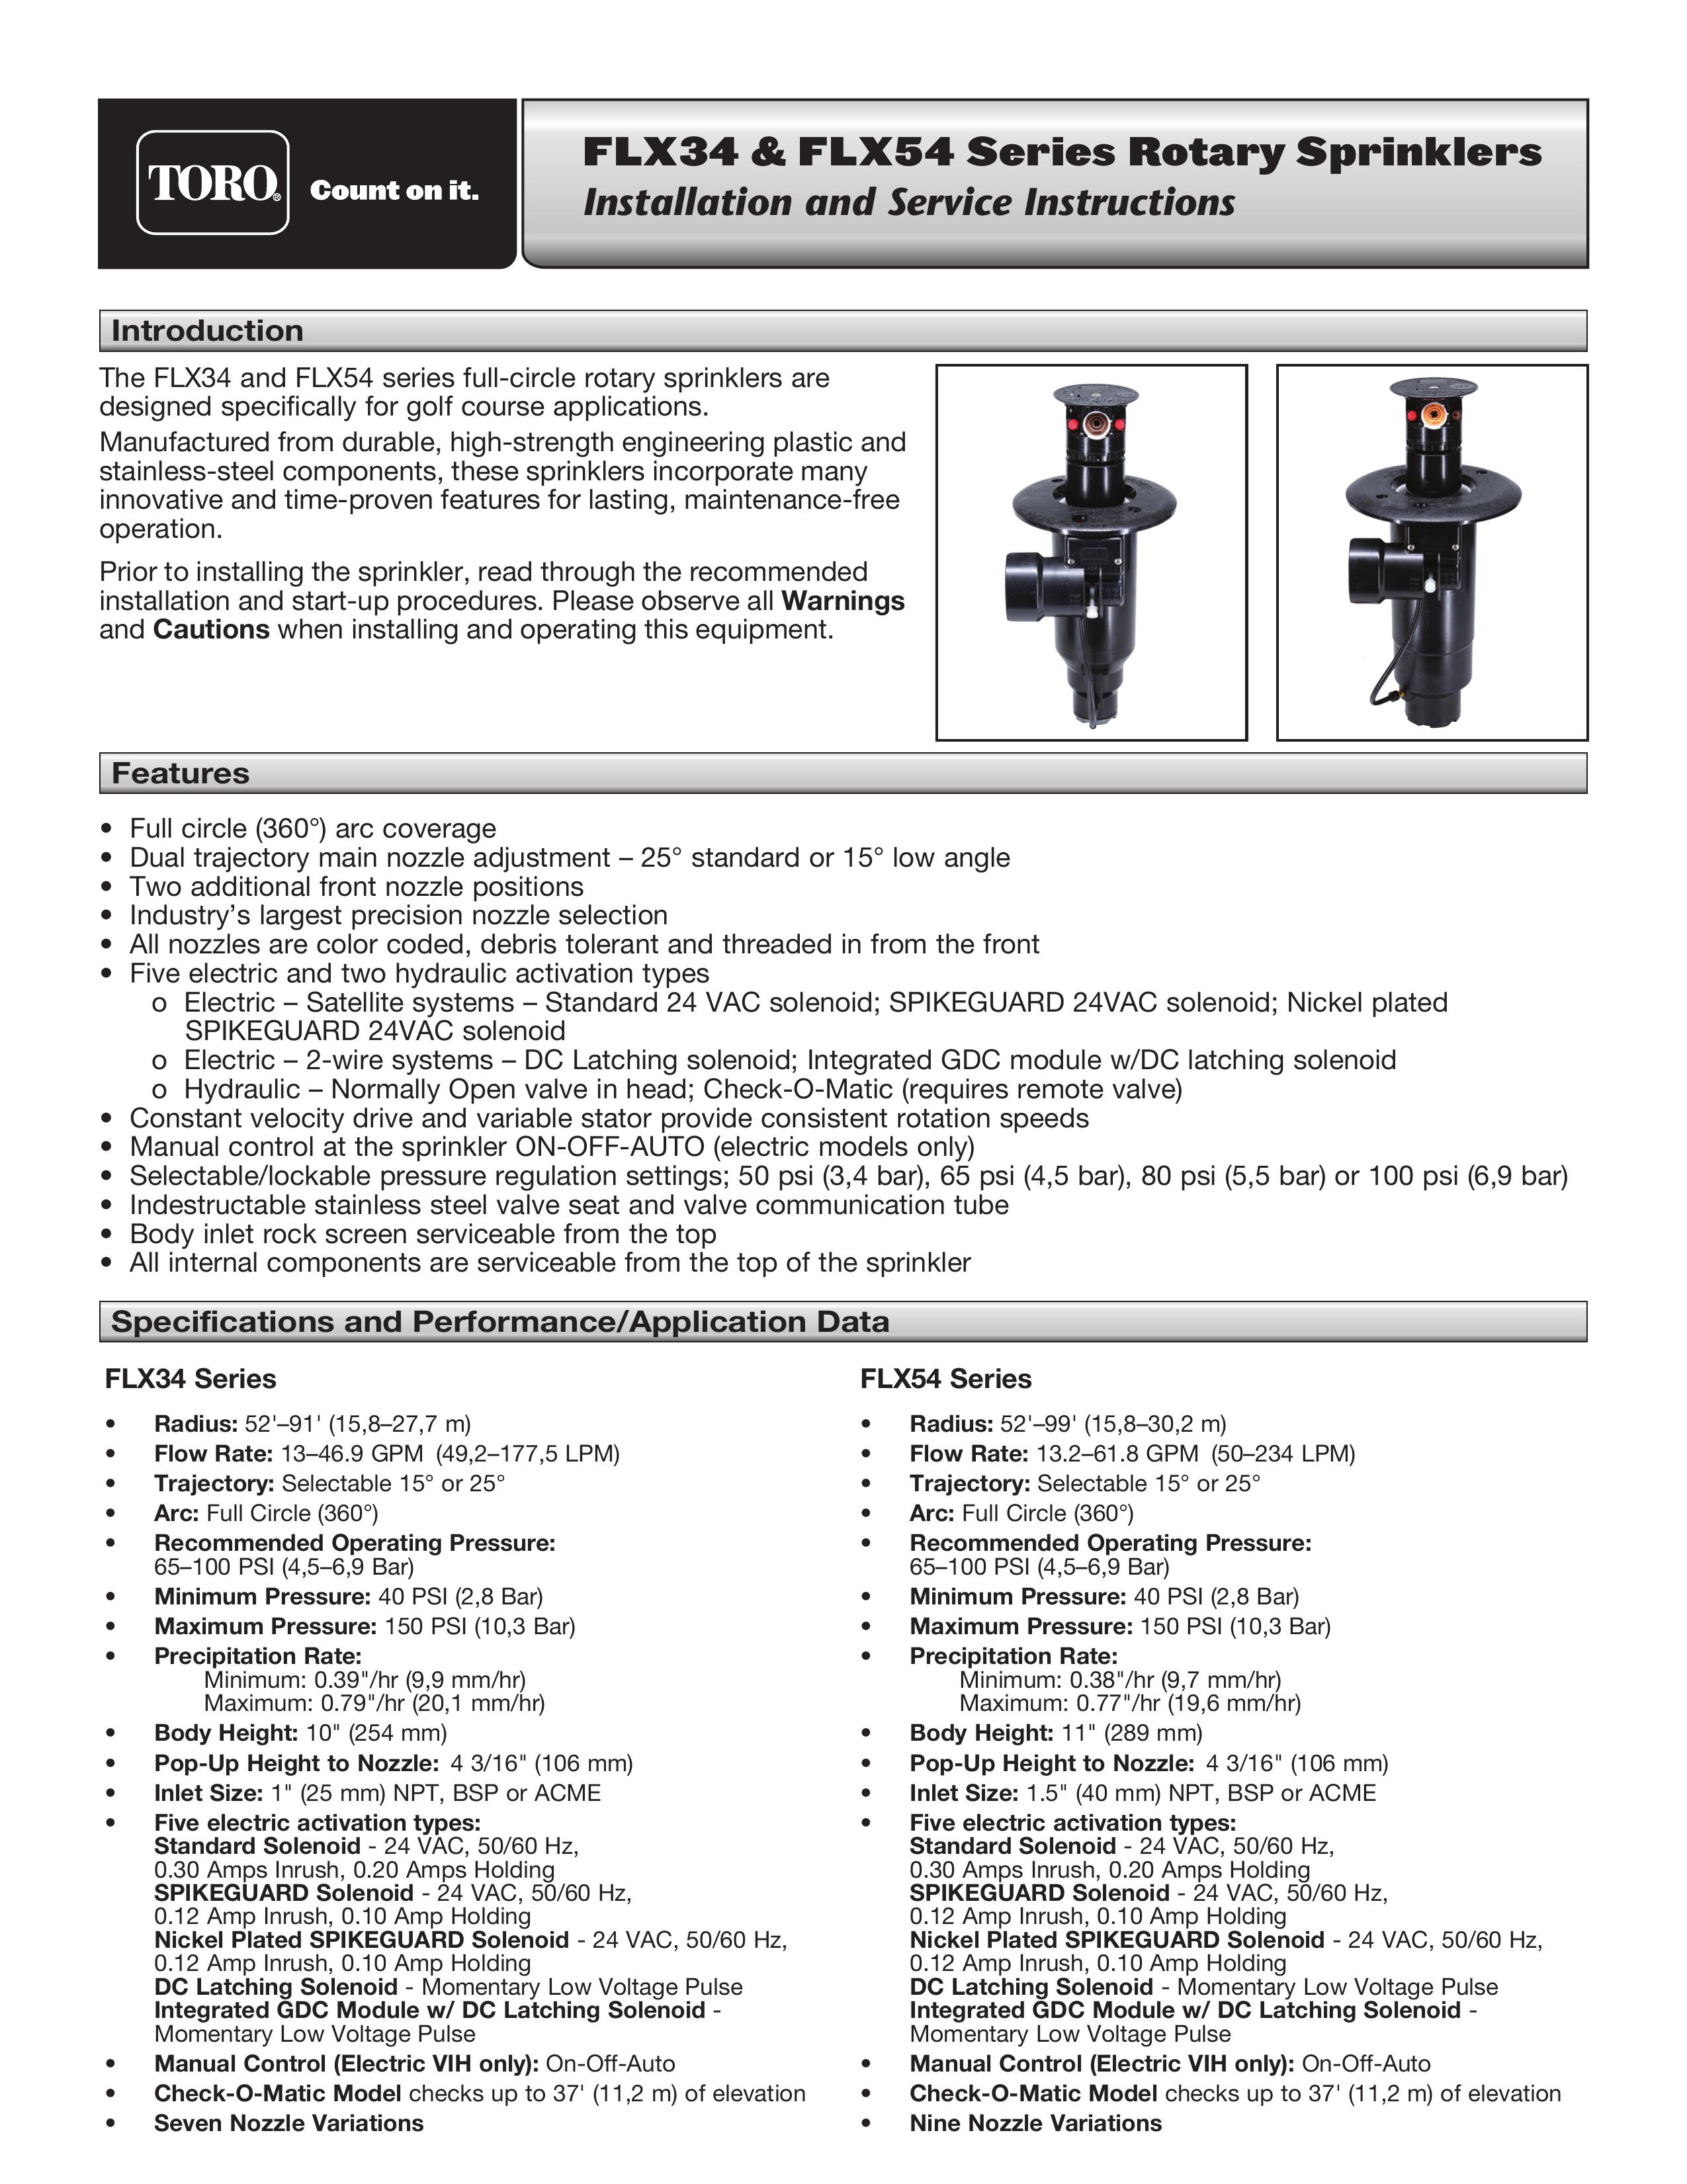 Toro FLX54 Sprinkler User Manual